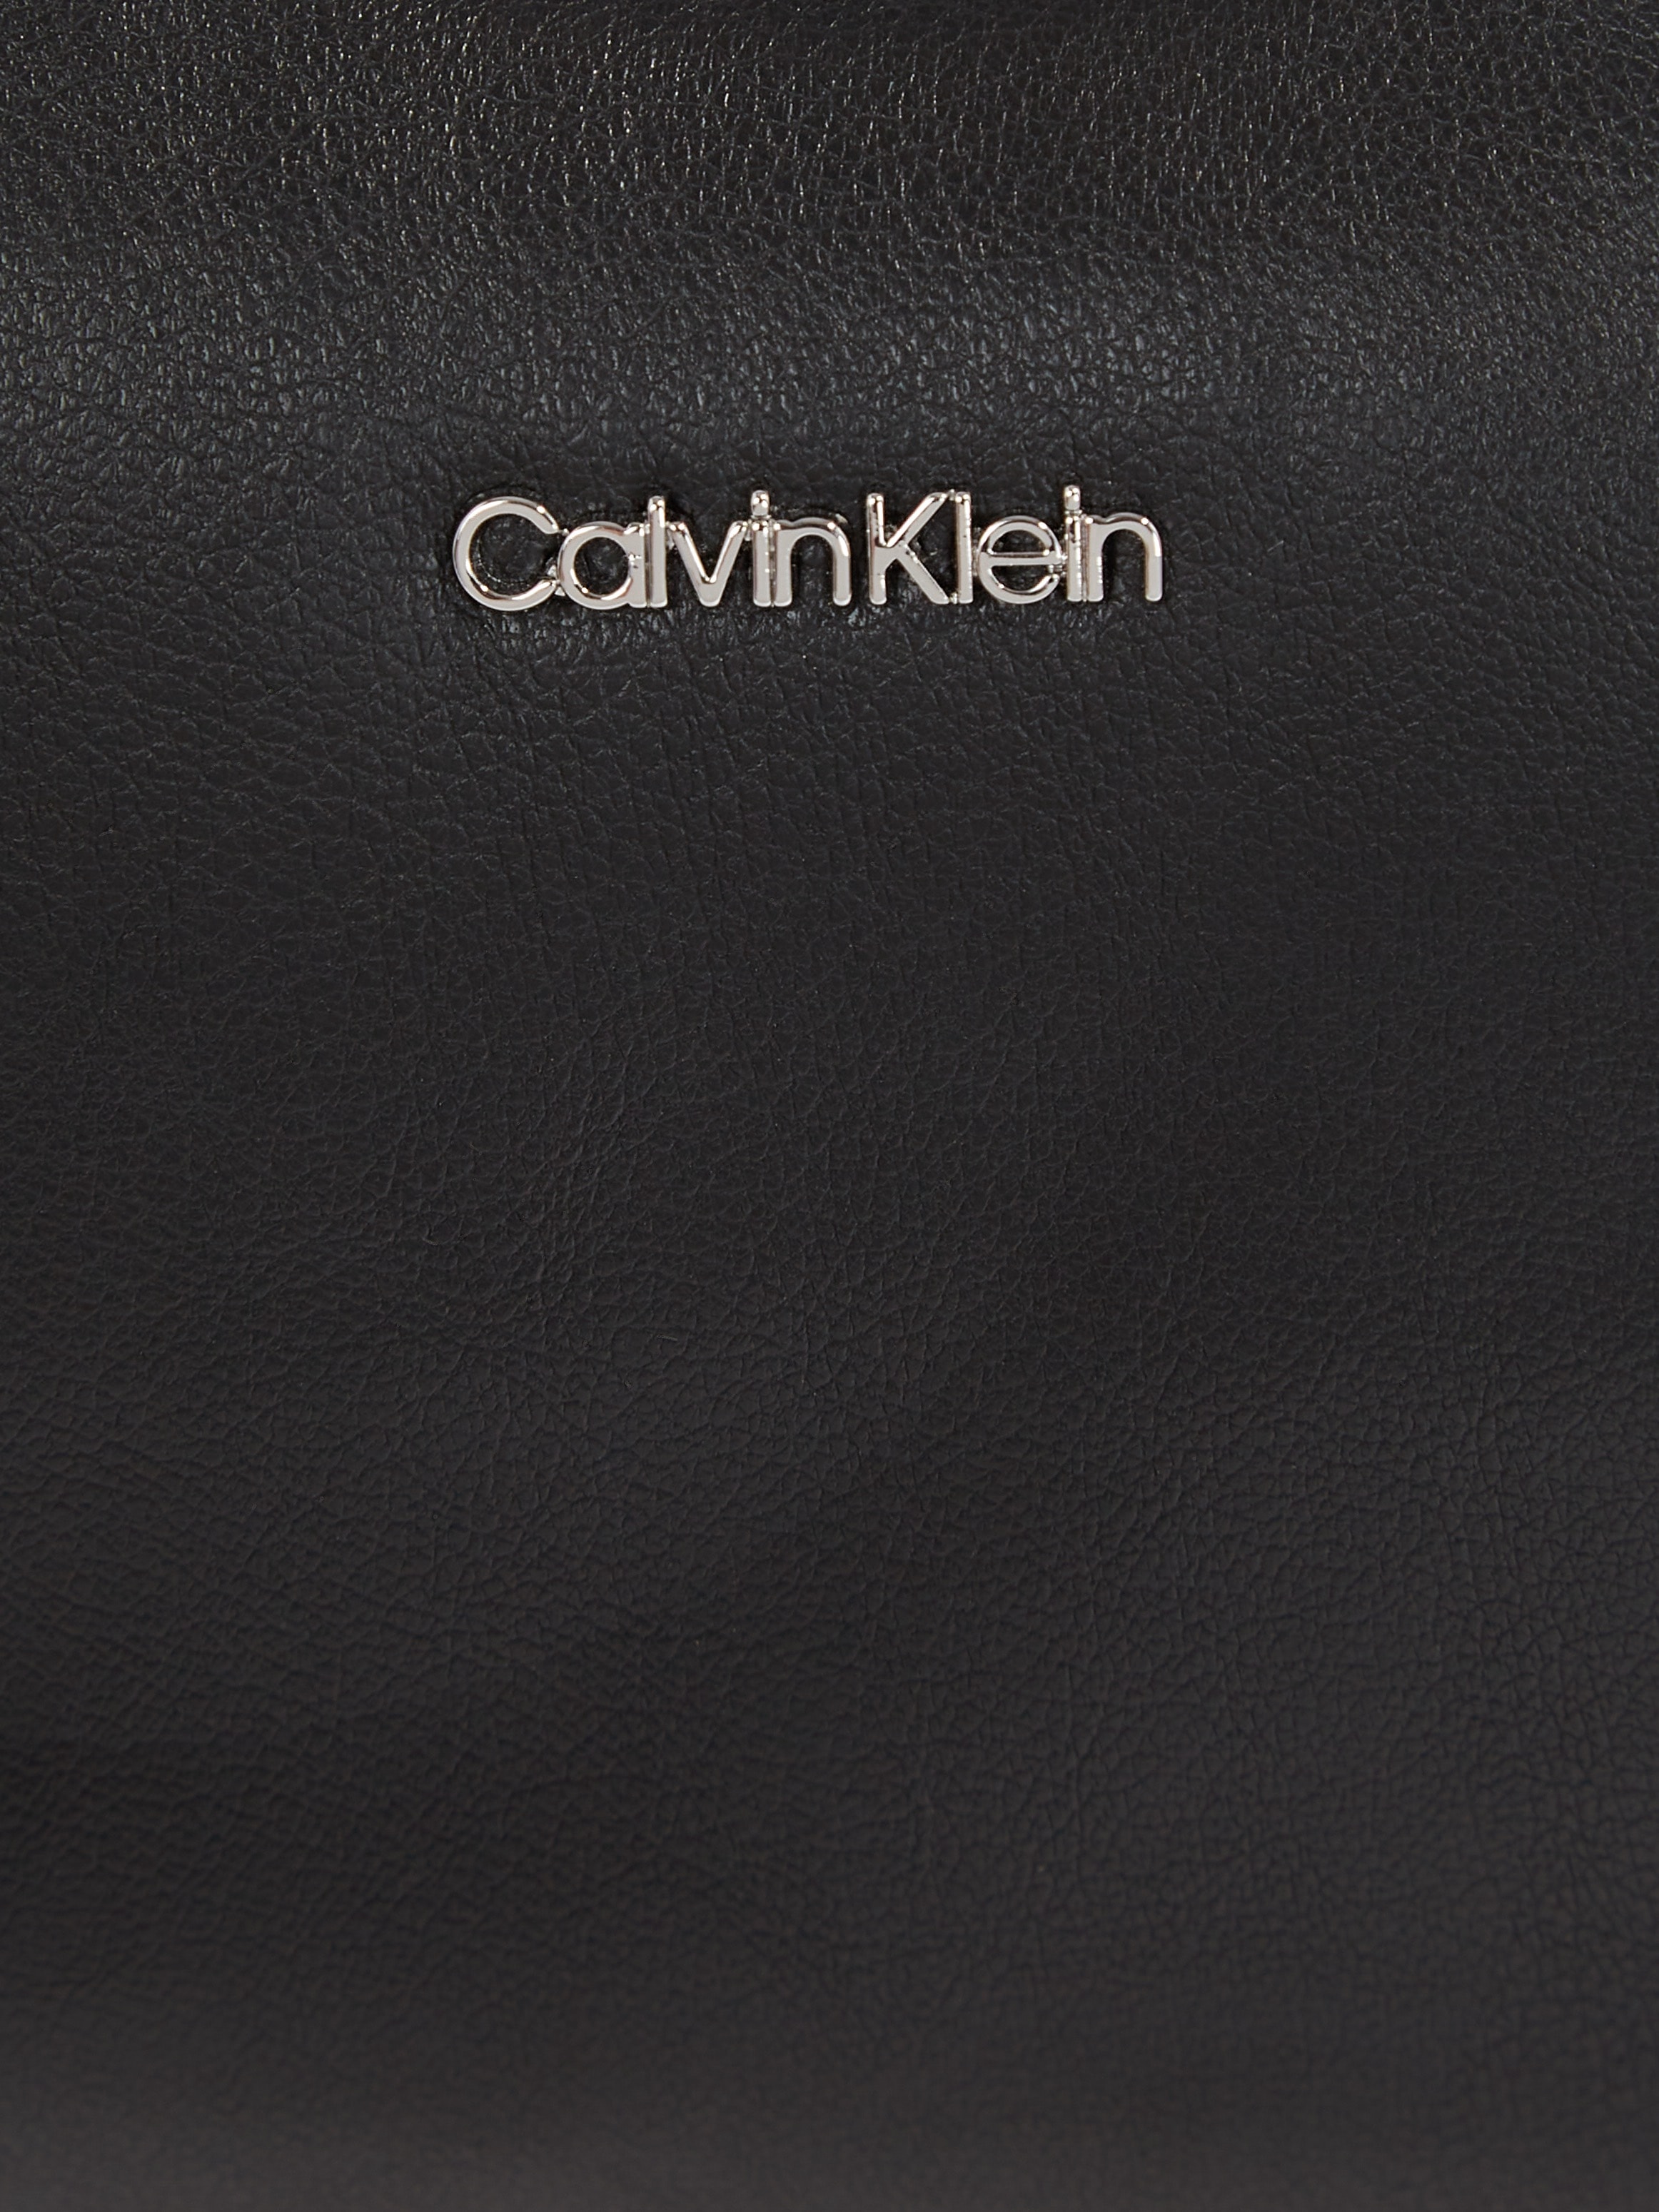 Calvin Klein Umhängetasche »EMMA CROSSBODY BAG«, Handtasche Damen Tasche Damen Schultertasche